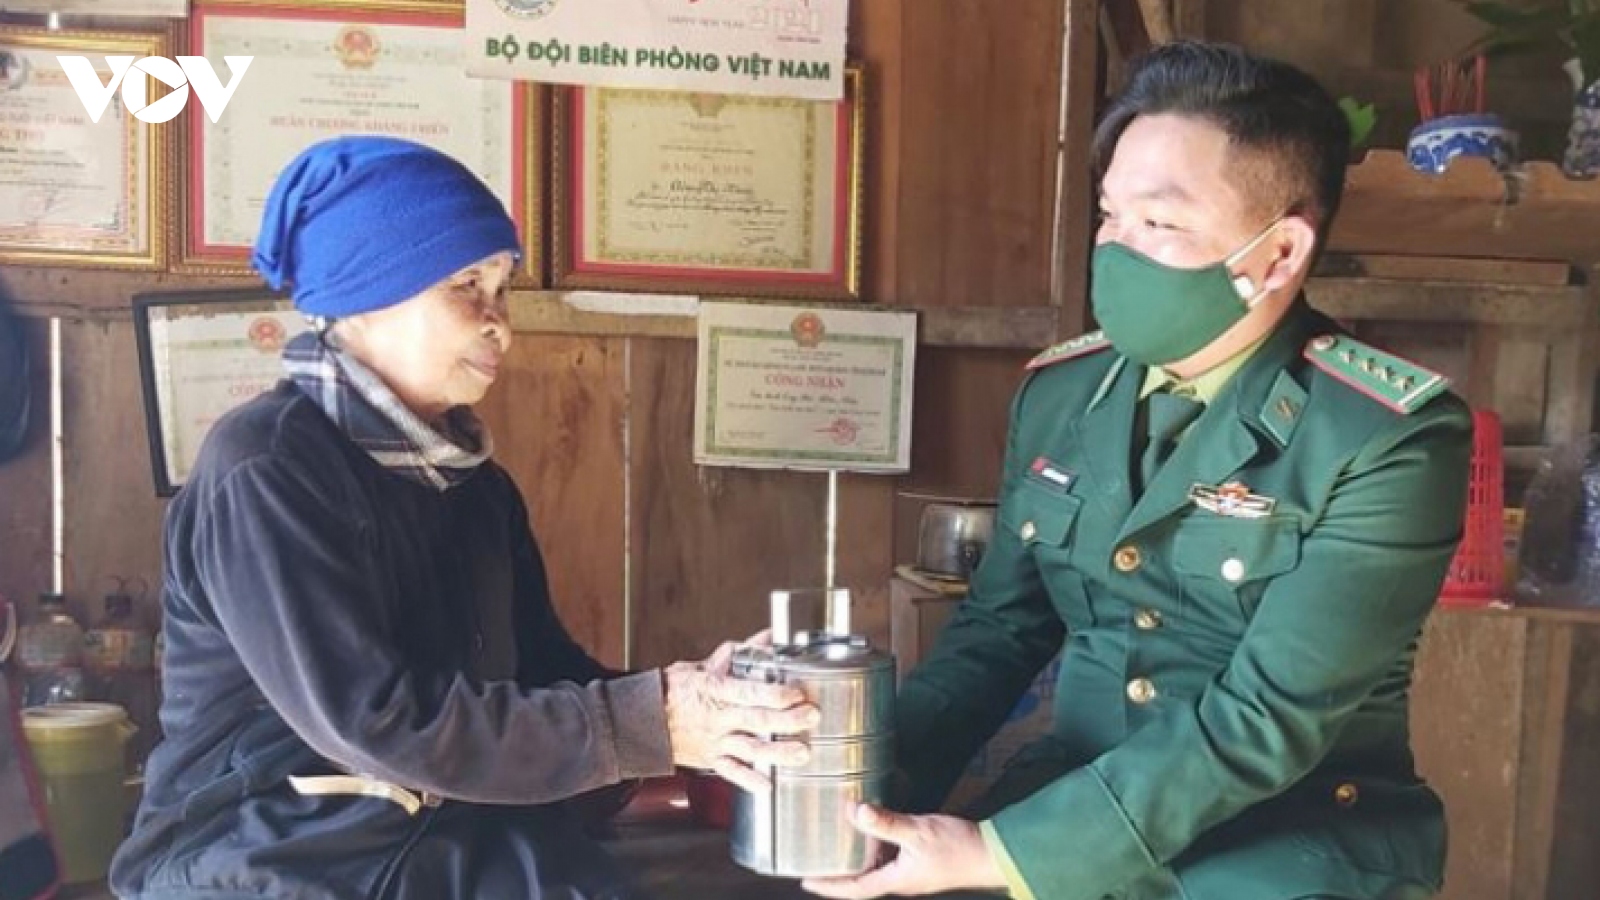 Biên phòng Quảng Nam trao hàng ngàn suất quà trị giá gần 1 tỷ đồng cho gia đình nghèo